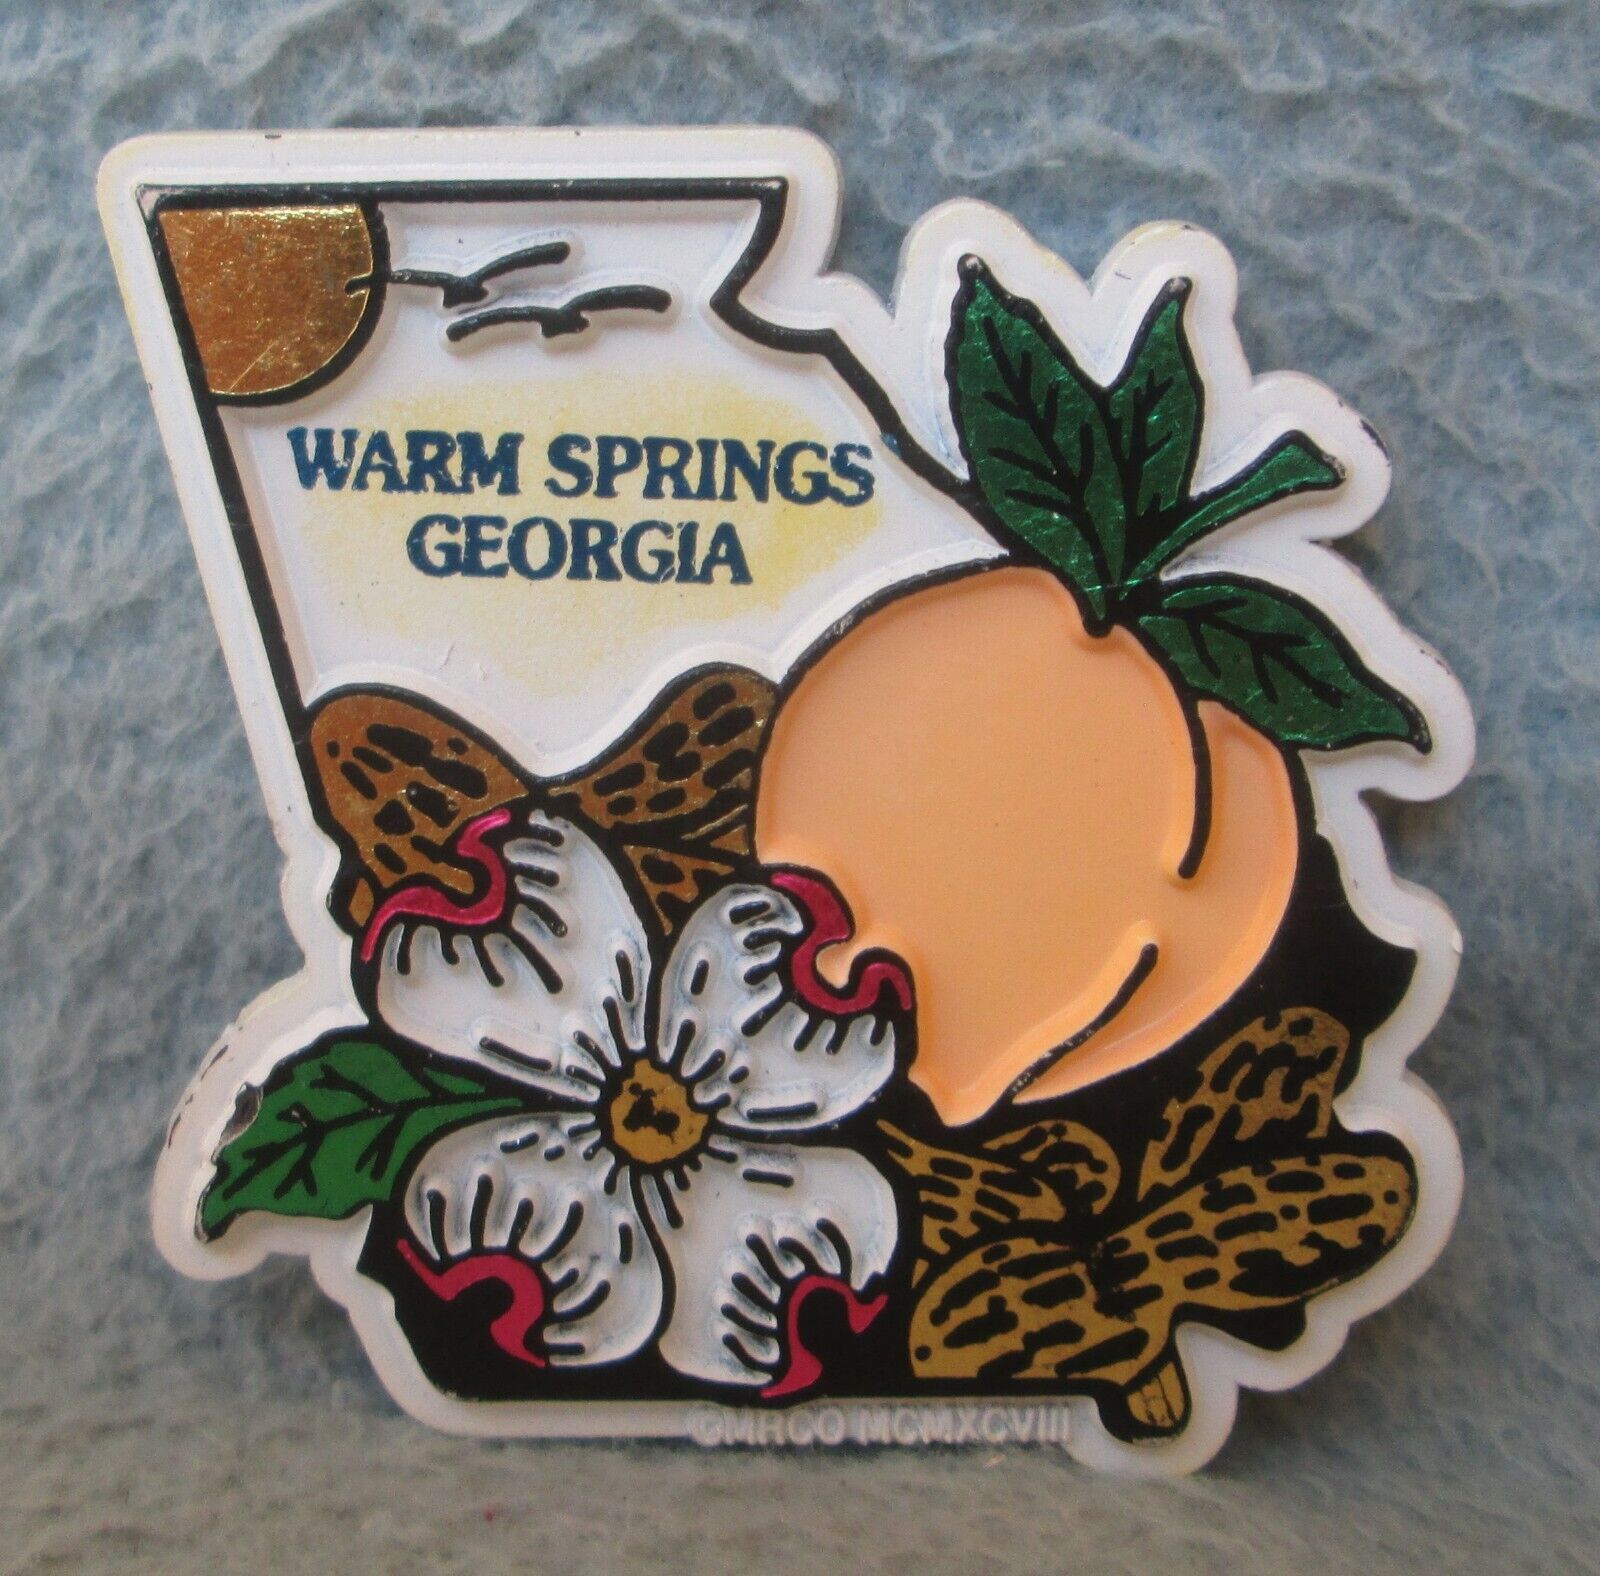 Peach Warm Springs Georgia Rubber Magnet Souvenir Travel Refrigerator